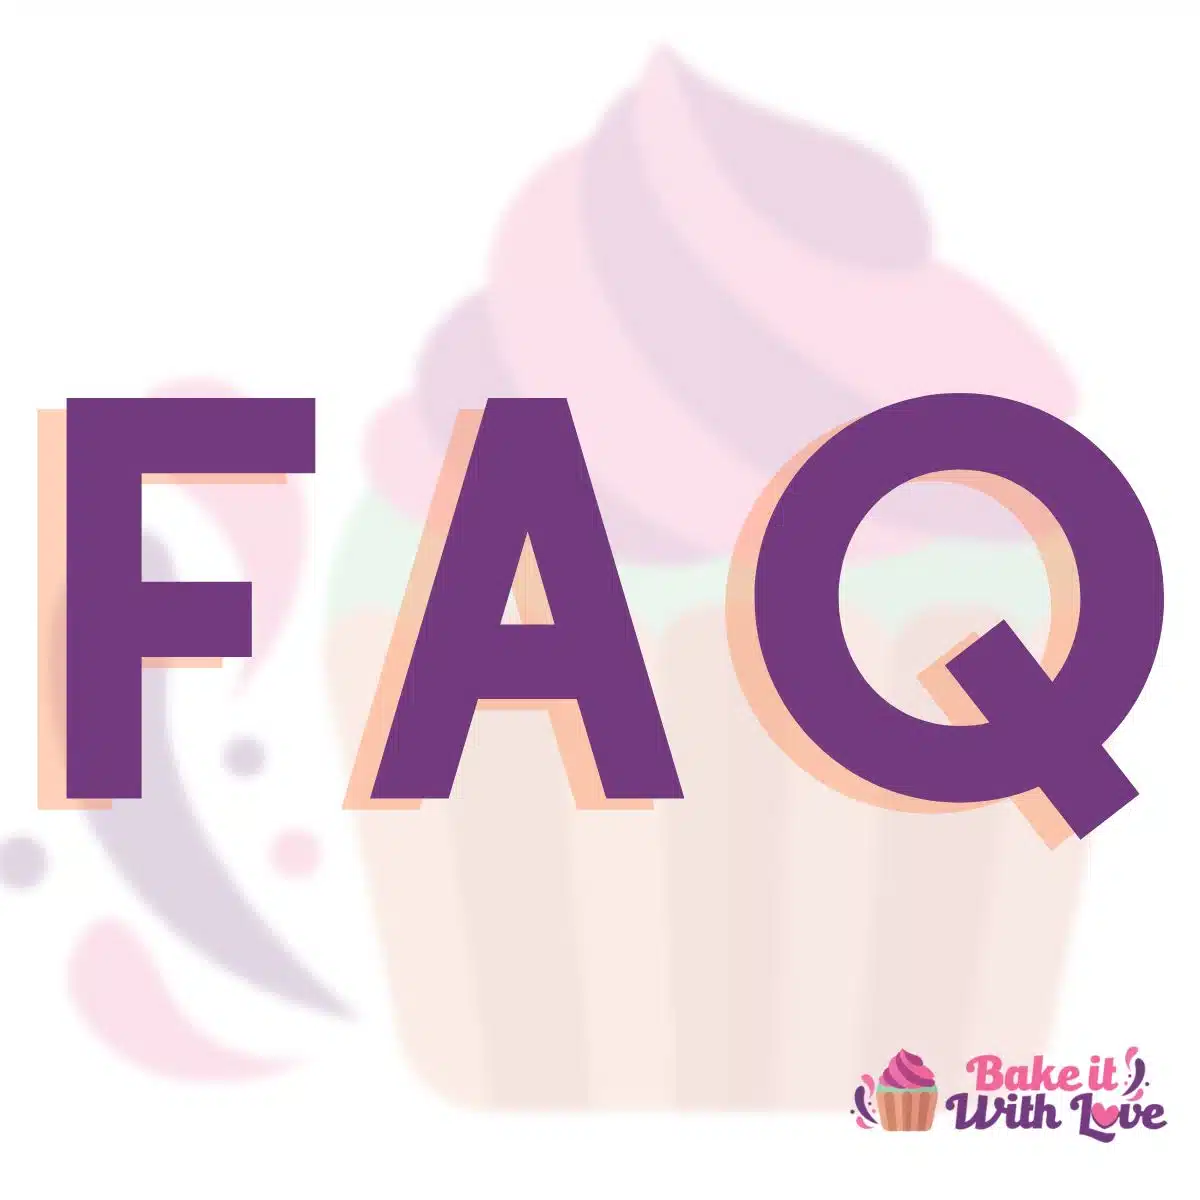 レシピ、コメントなどに関するよくある質問については、Bake It With Love サイトの FAQ を参照してください。 サイトを最大限に活用するための素晴らしい質問と回答がたくさんあります。